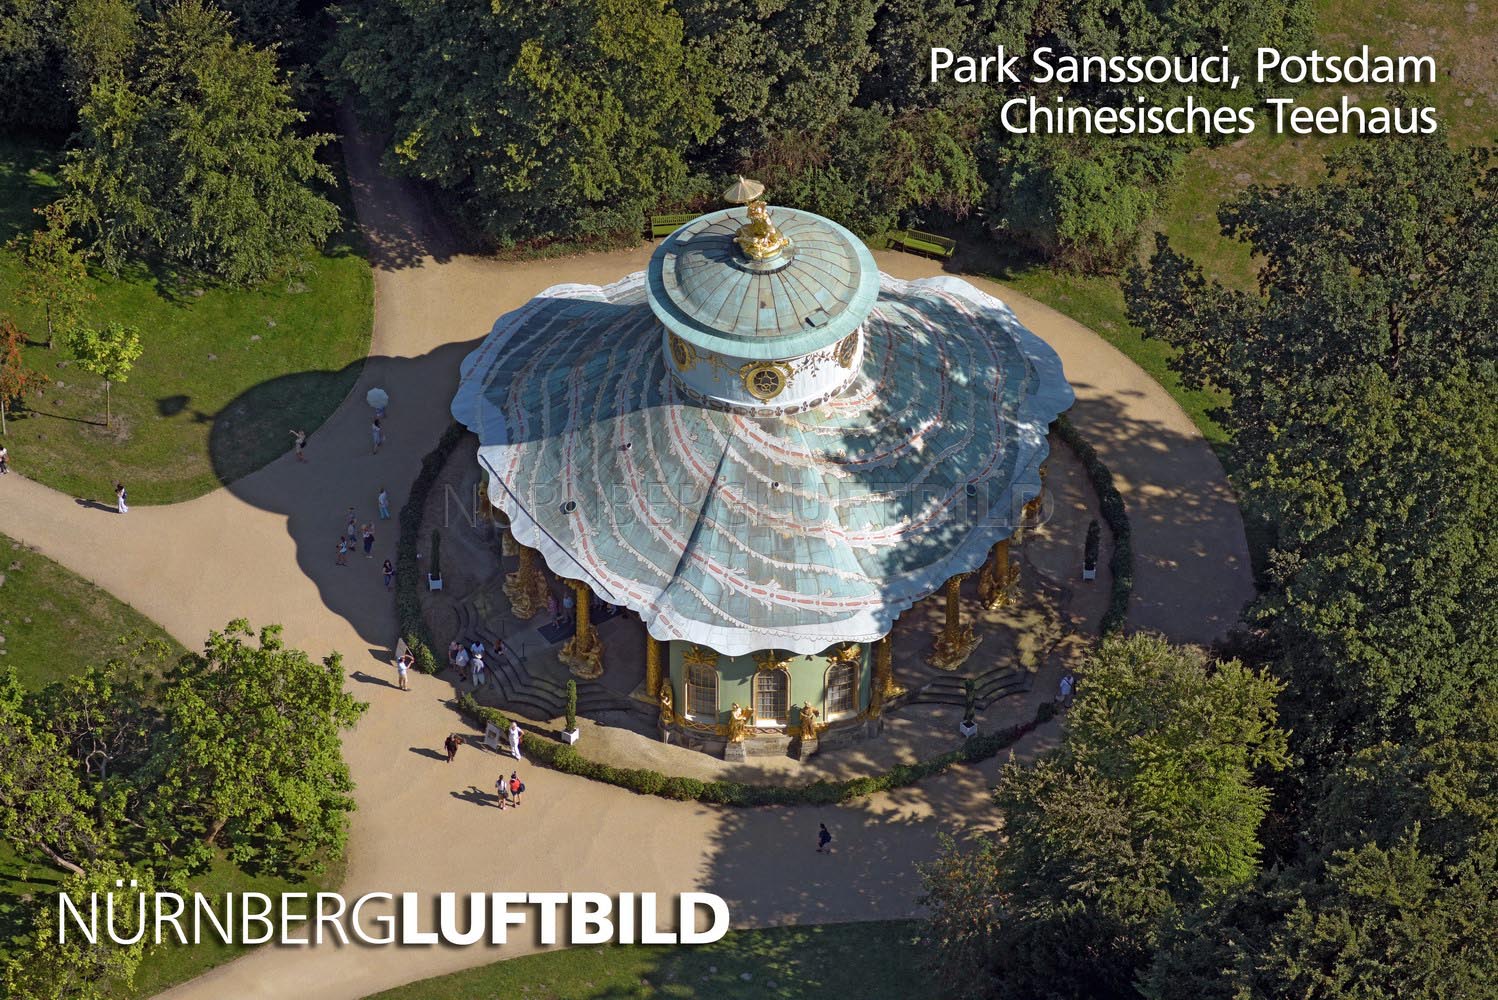 Park Sanssouci, Potsdam, Chinesisches Teehaus, Luftbild